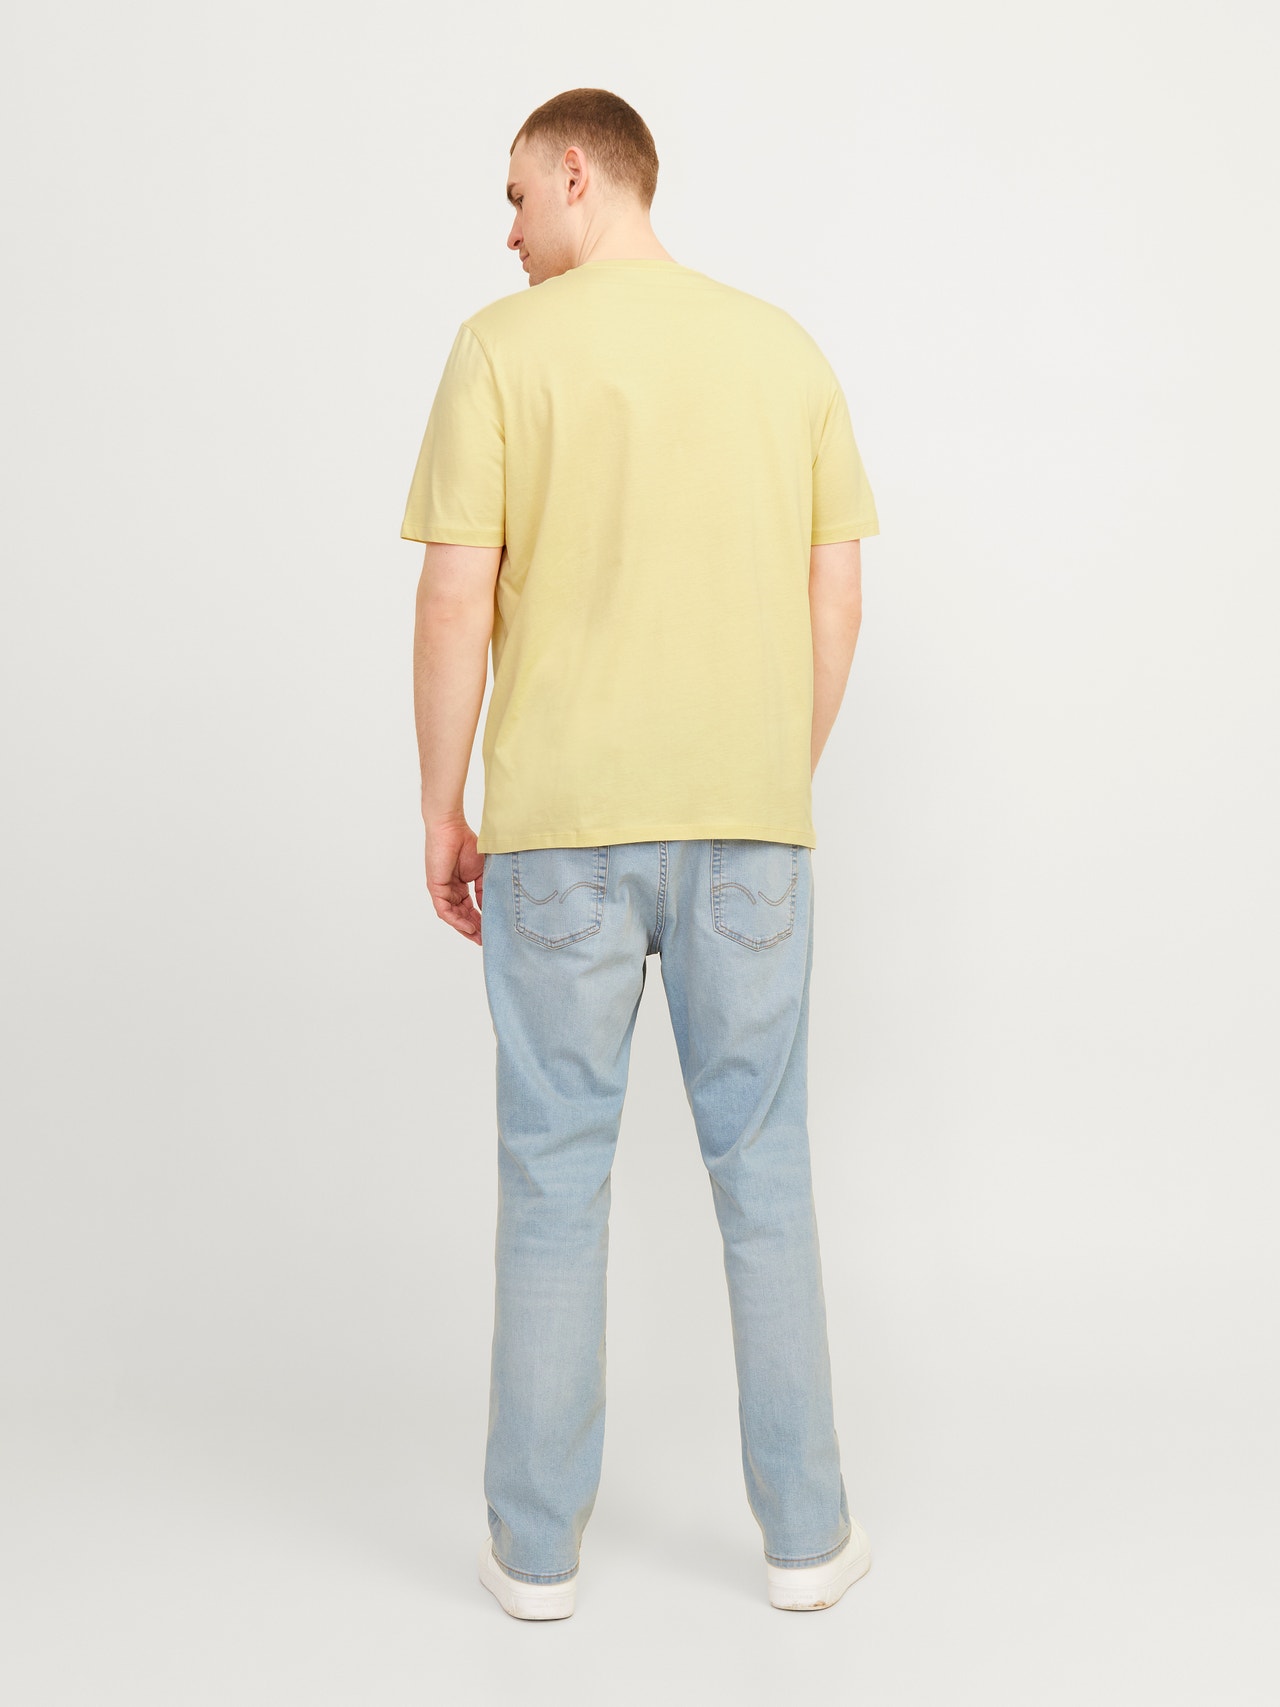 Jack & Jones Plus Size Trykk T-skjorte -Italian Straw - 12257567